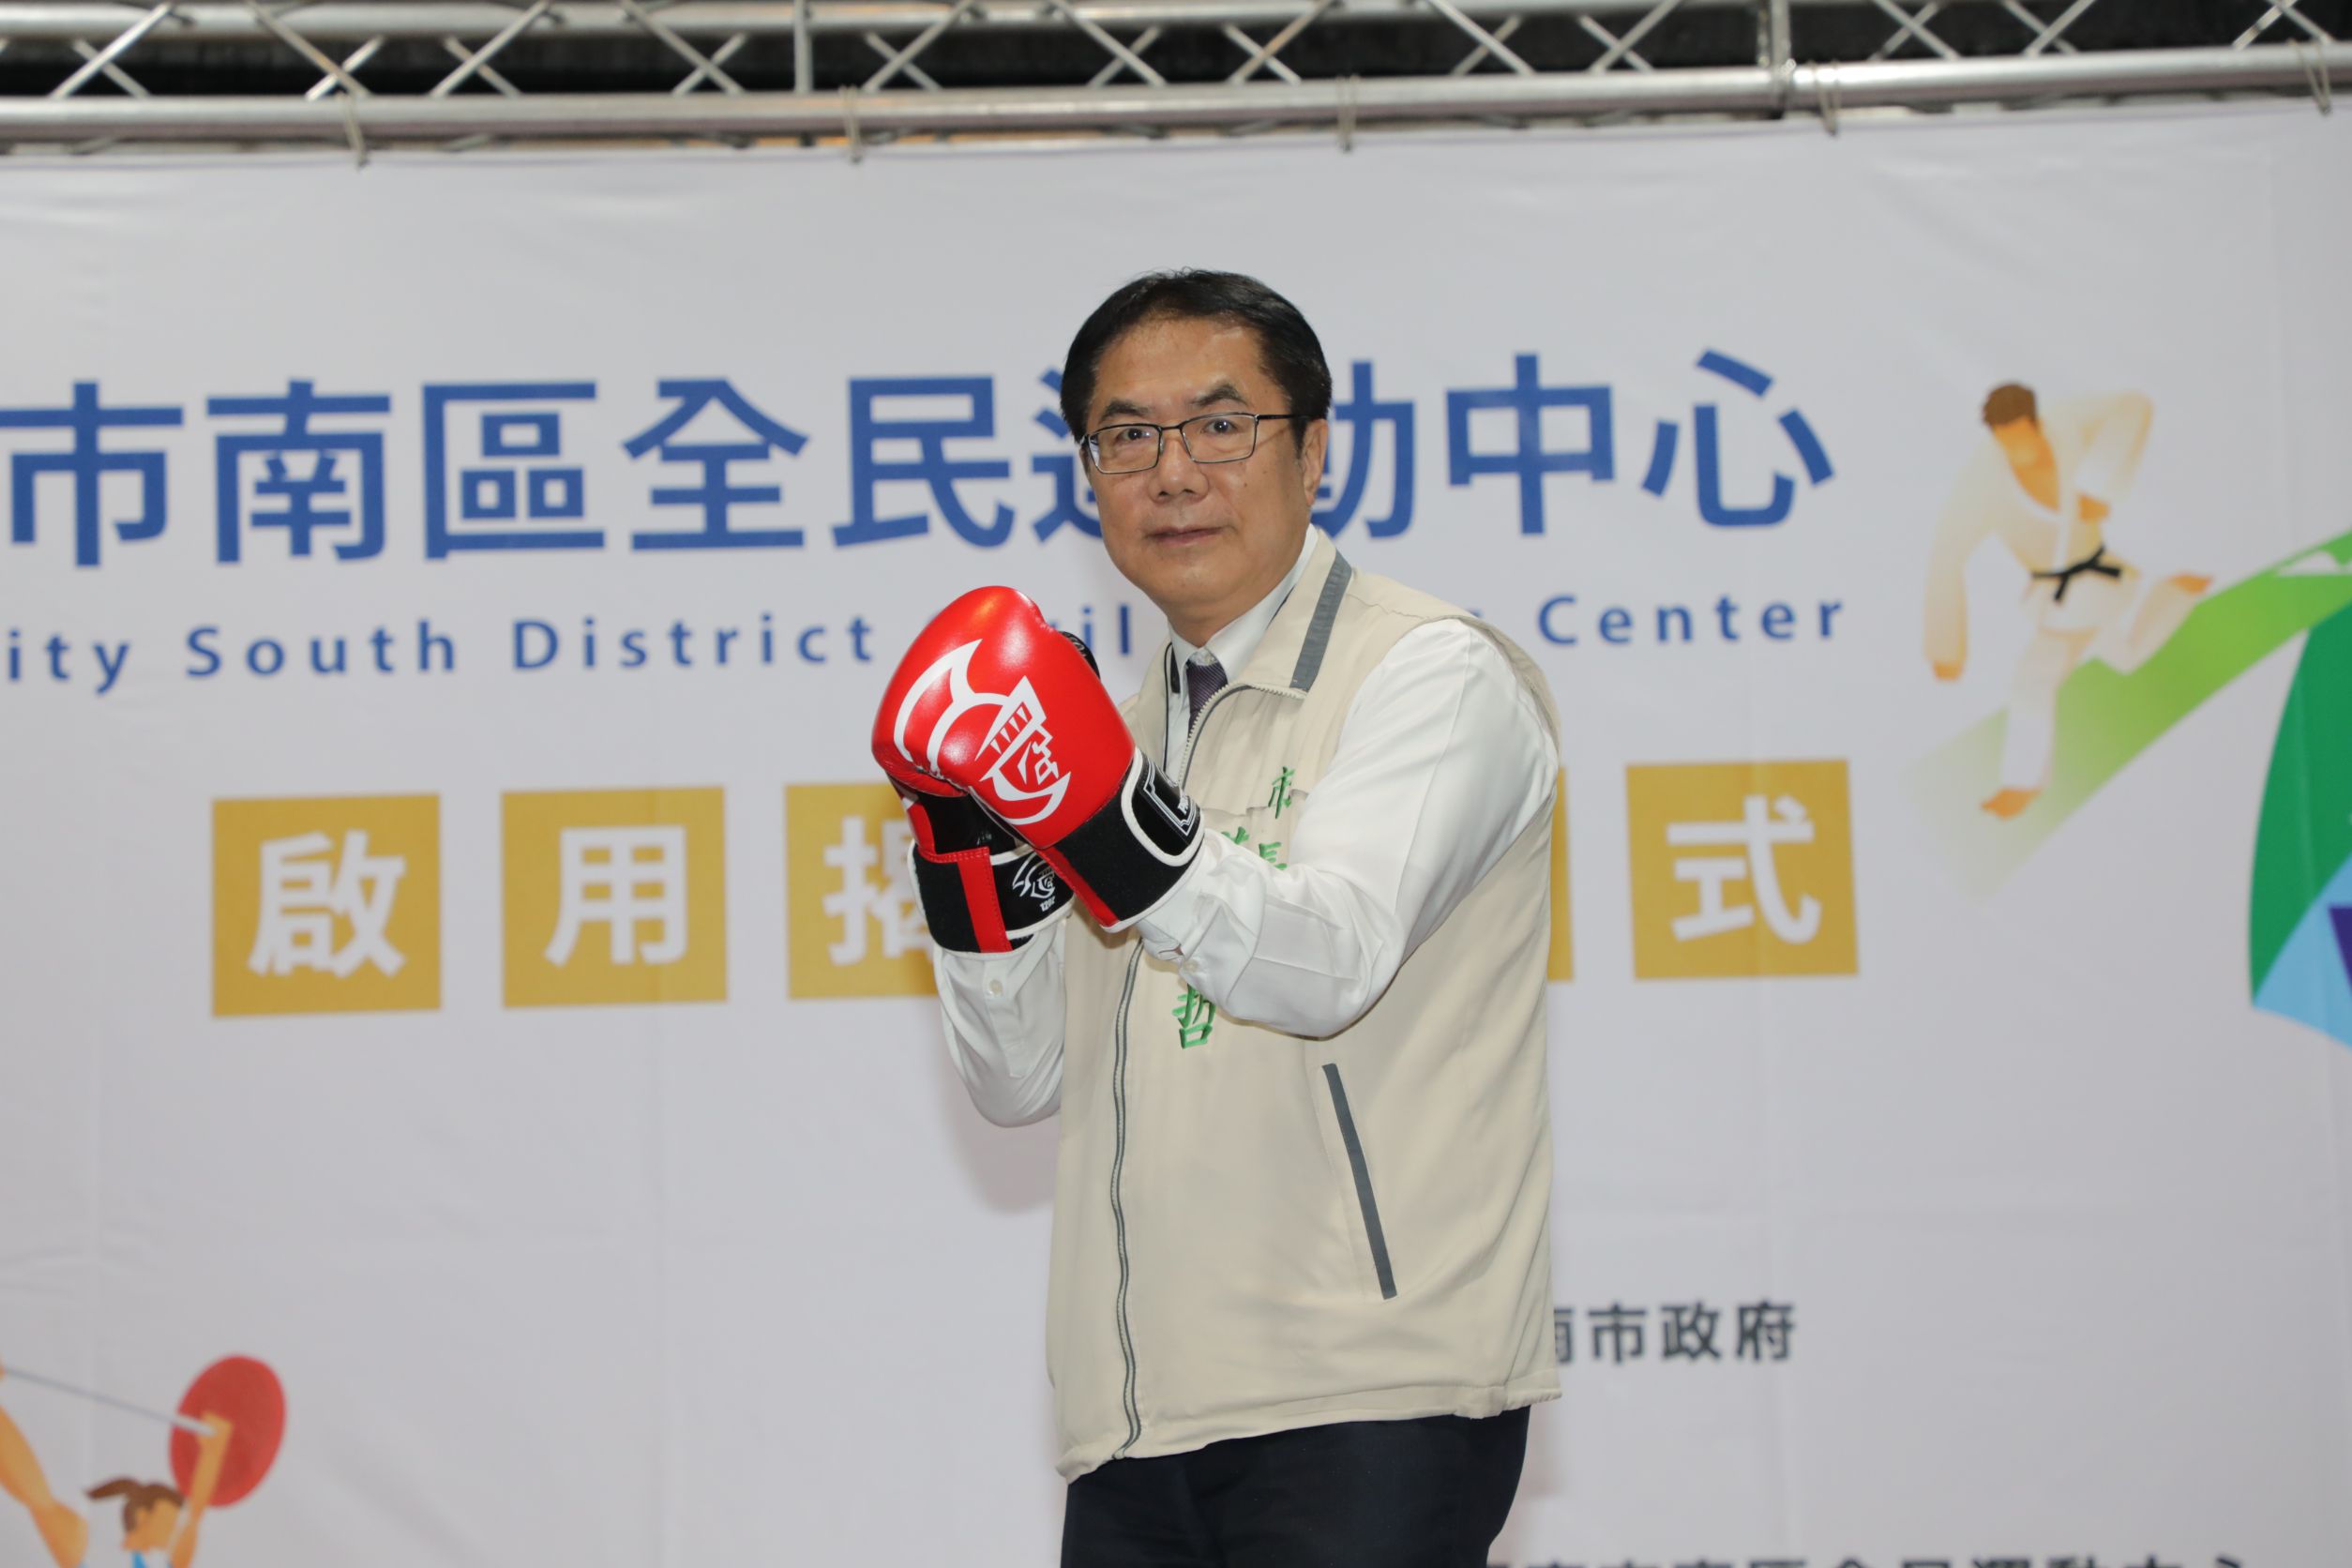 台南市府鼓勵全民養成運動的生活習慣